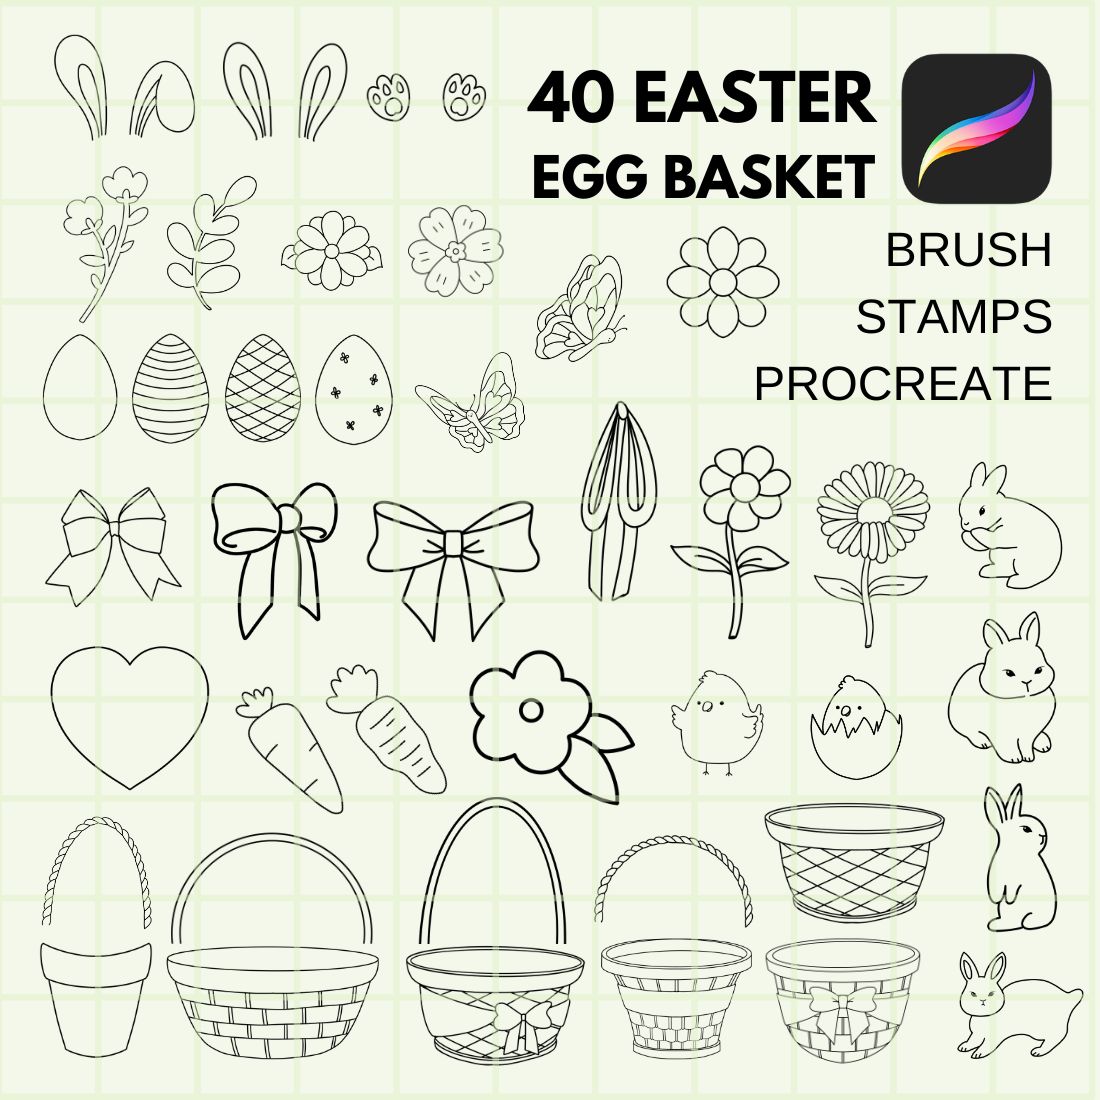 The easter egg basket stamp set is shown.